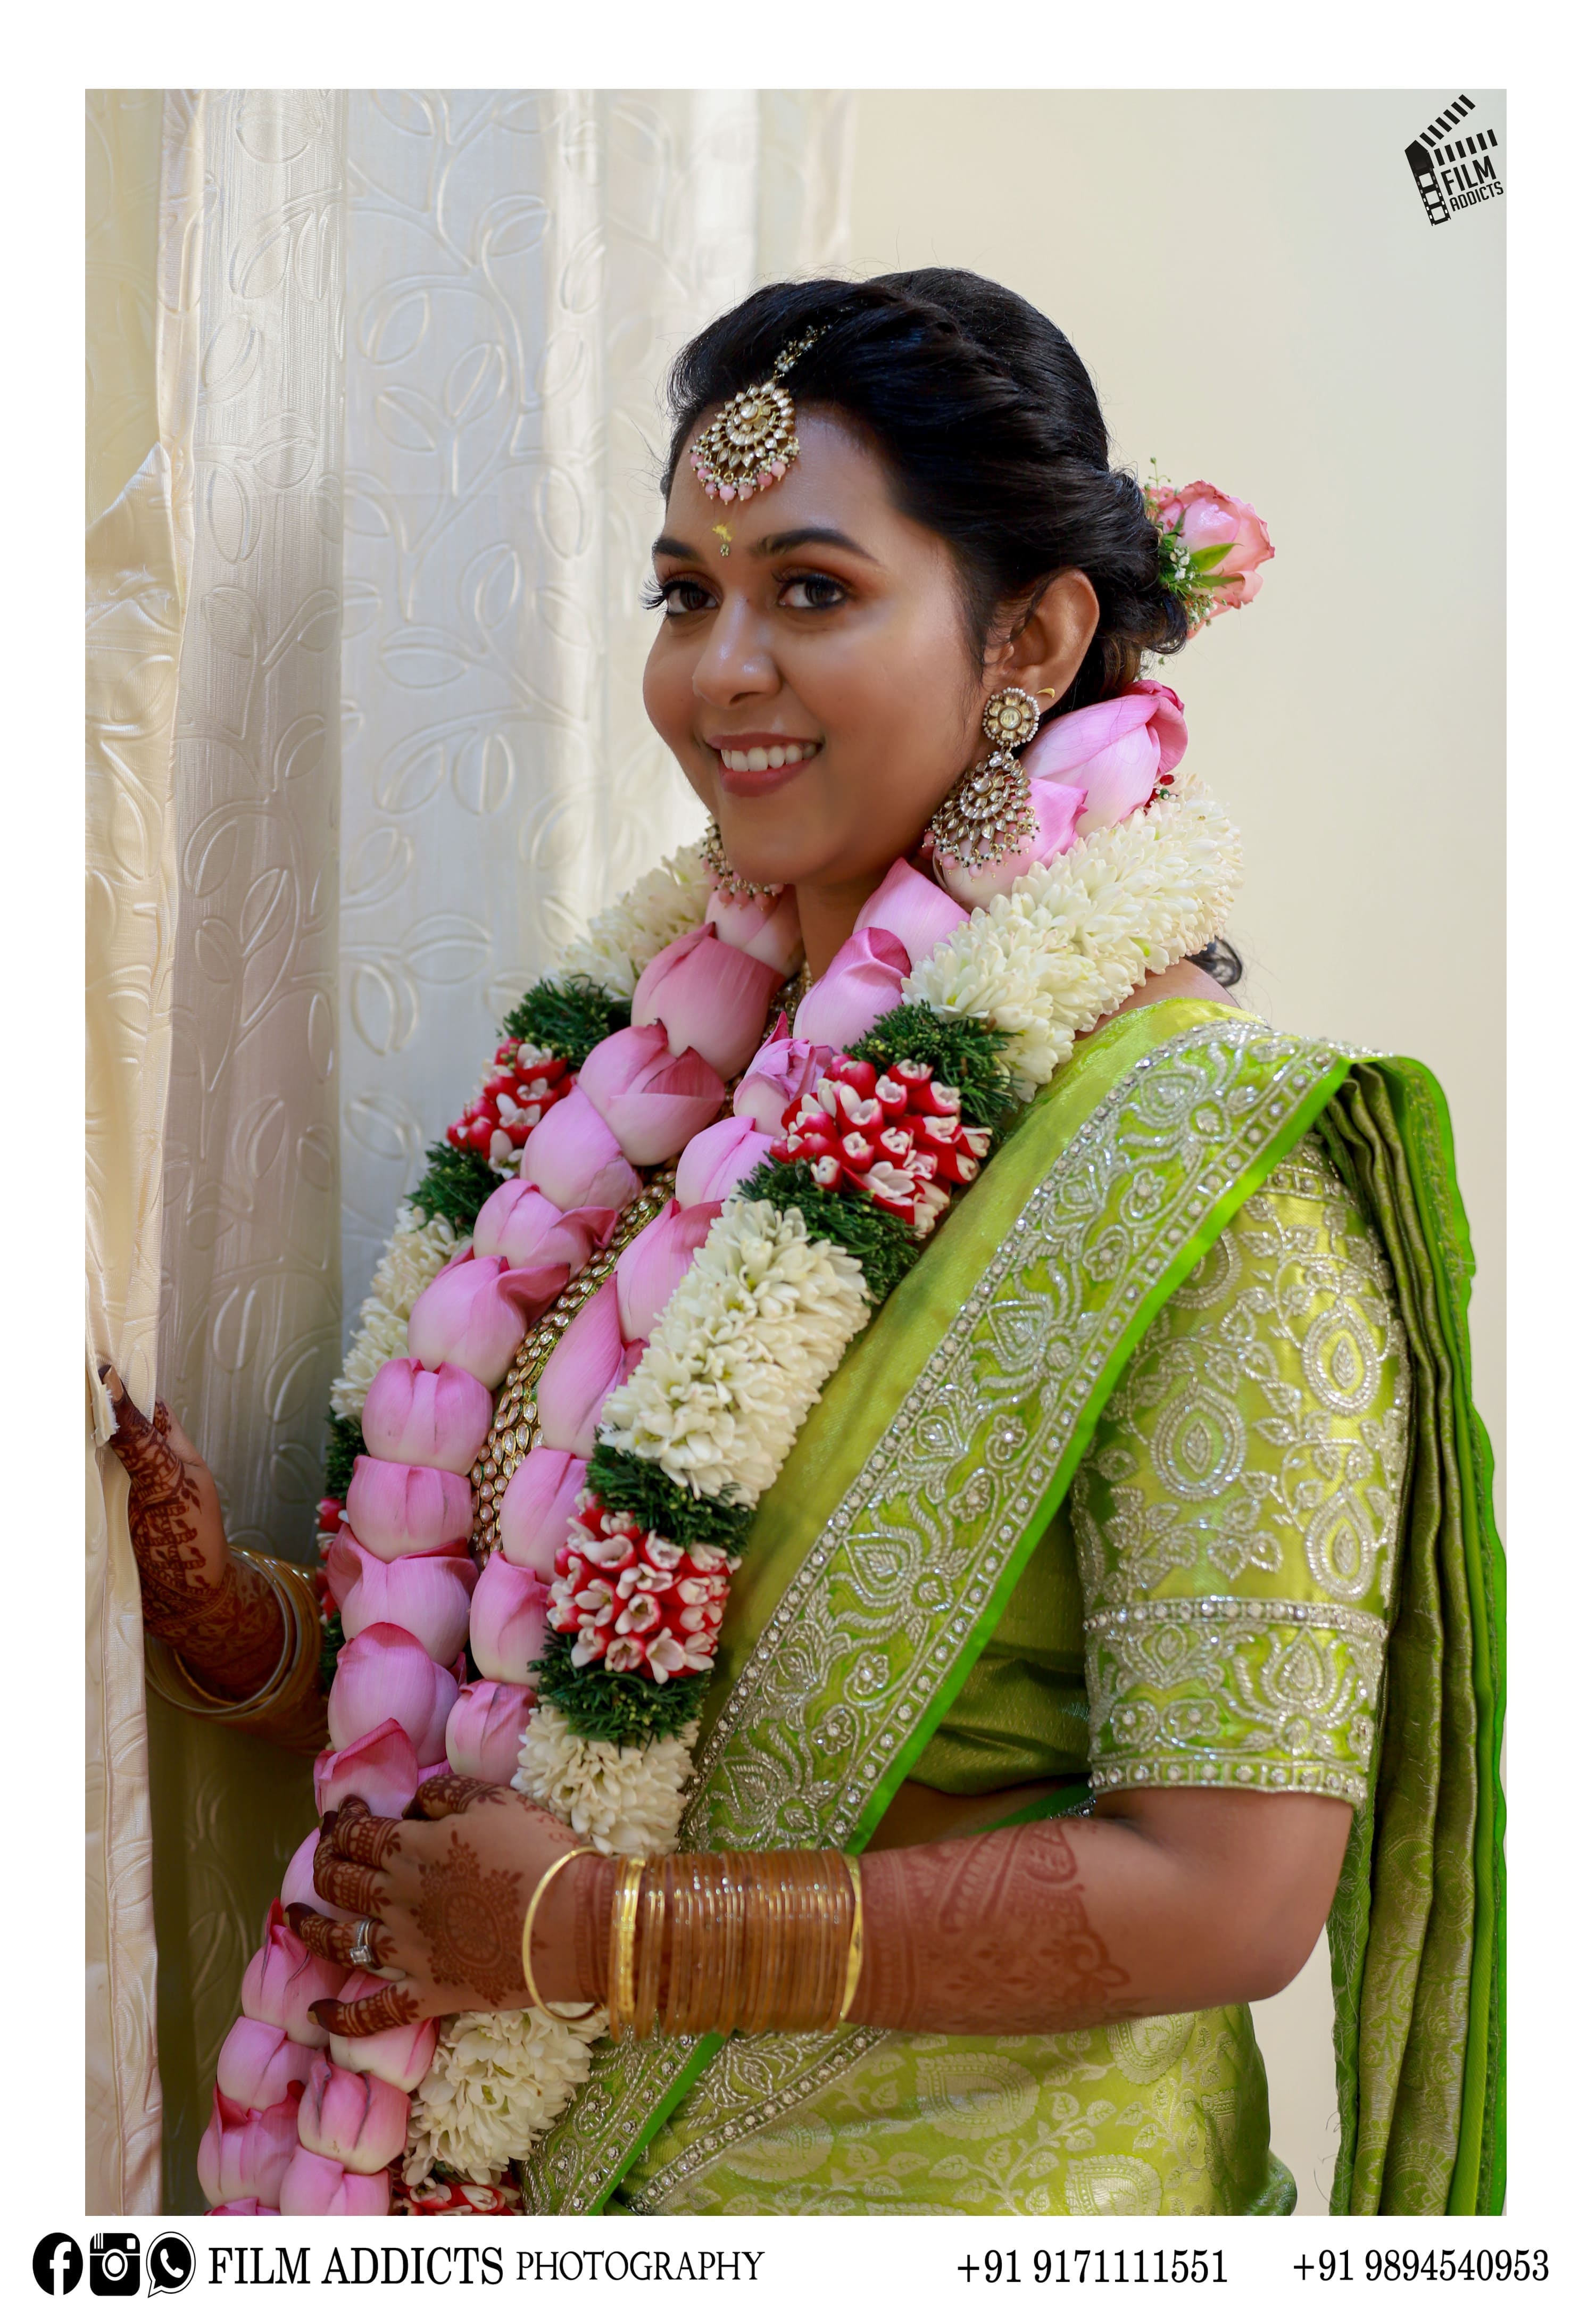 Thanjavur Wedding Planners, Best Wedding Planners in Thanjavur,Wedding Planners in Thanjavur